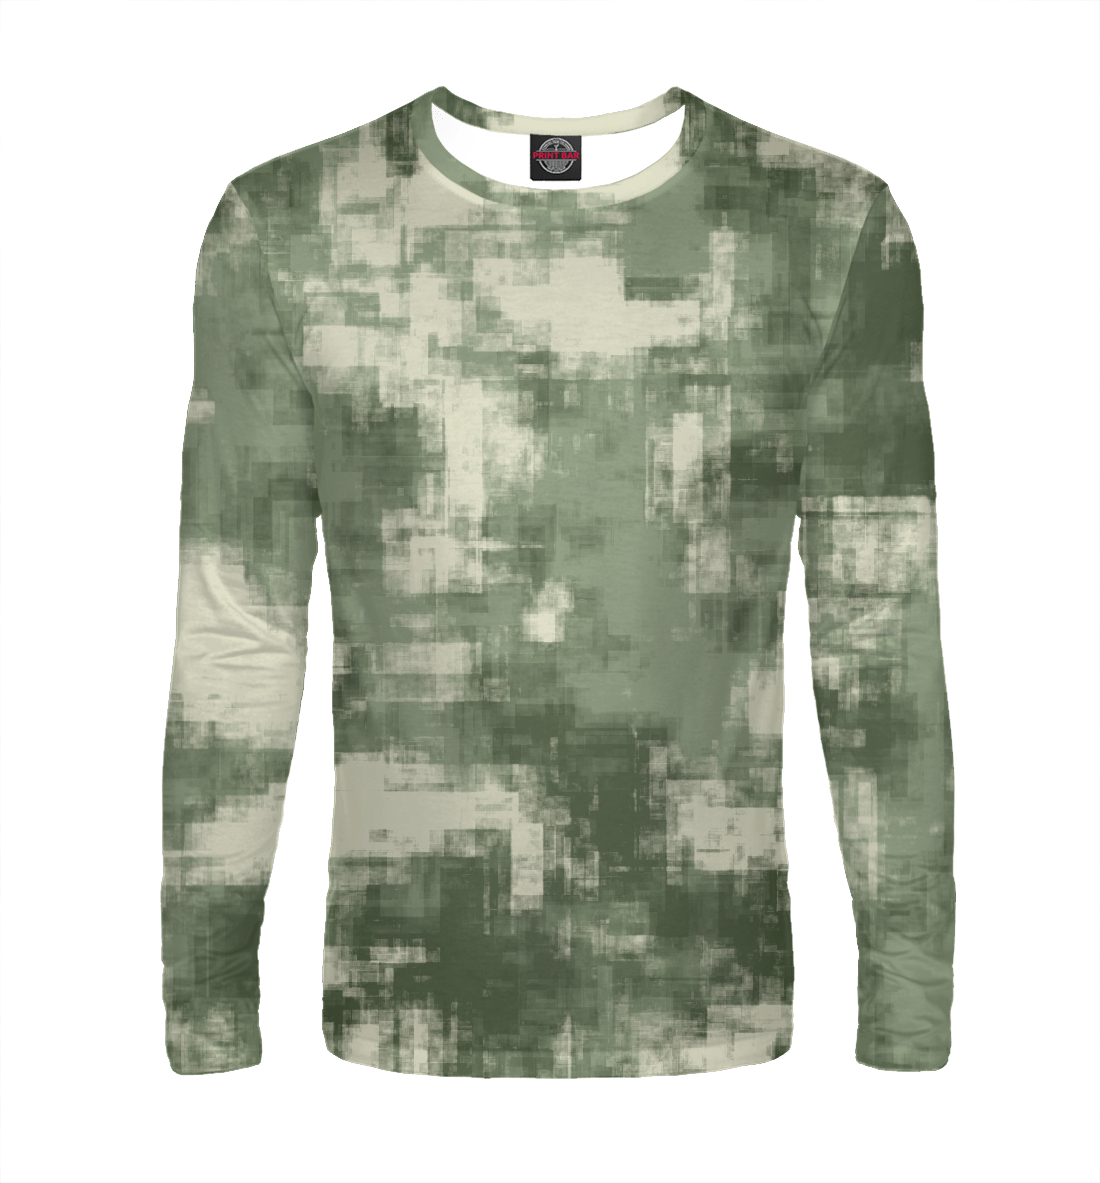 Мужской Лонгслив Военный камуфляж- одежда для мужчин и женщин, артикул CMF-442561-lon-2mp